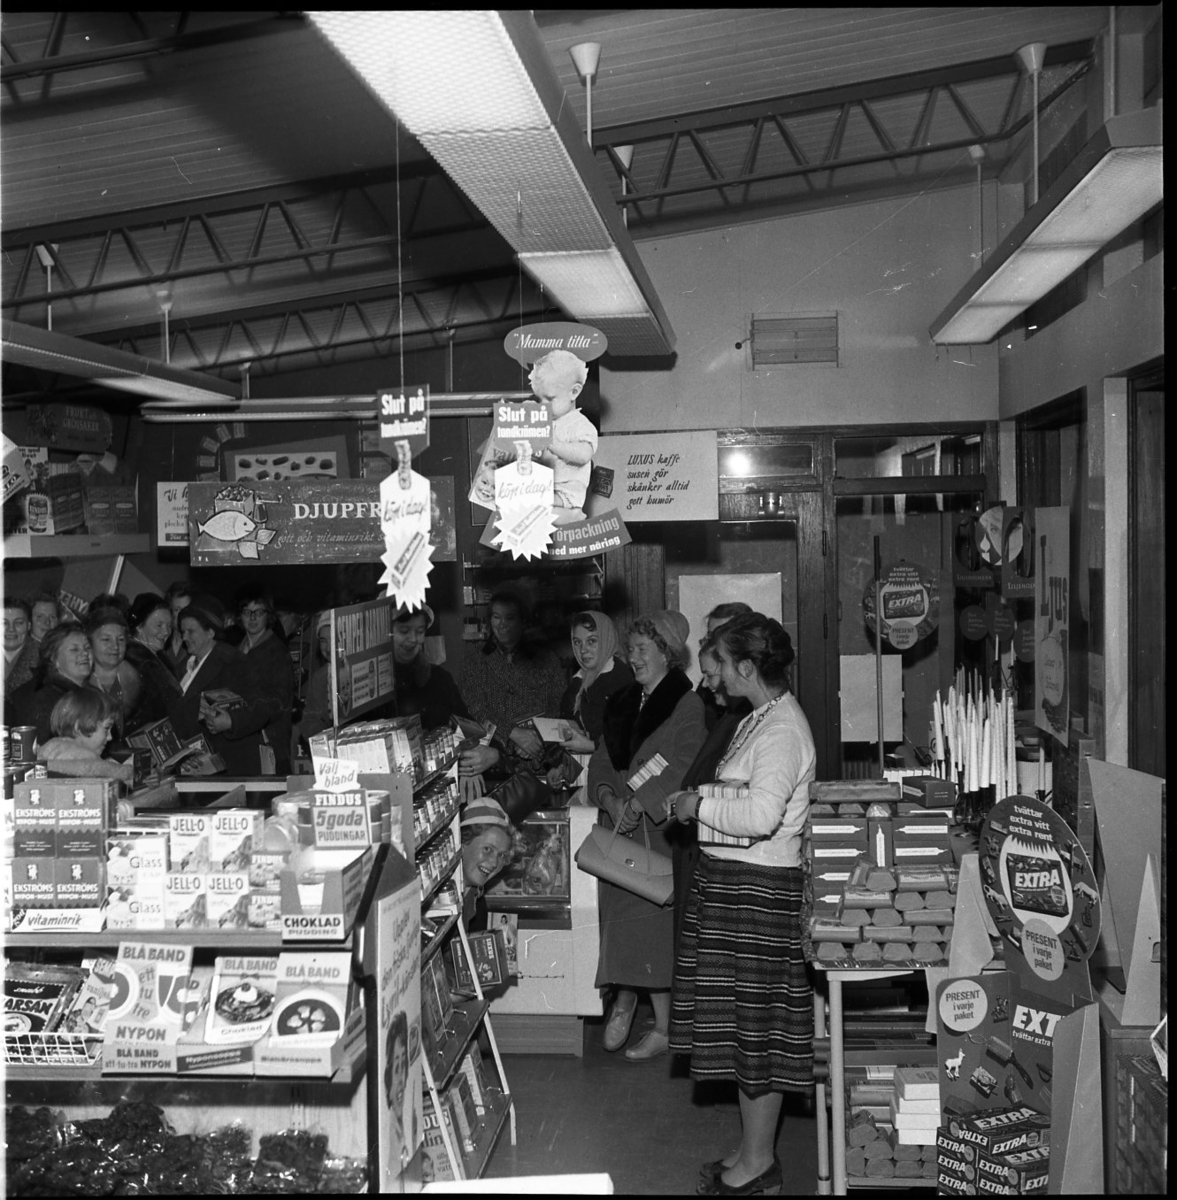 Kvinnor står i en vid båge i en mataffär. En kvinna tittar fram bakom en hylla och ler mot kameran. På hyllorna står matvaror med varumärken som Ekströms, Blå band och Jell-o.